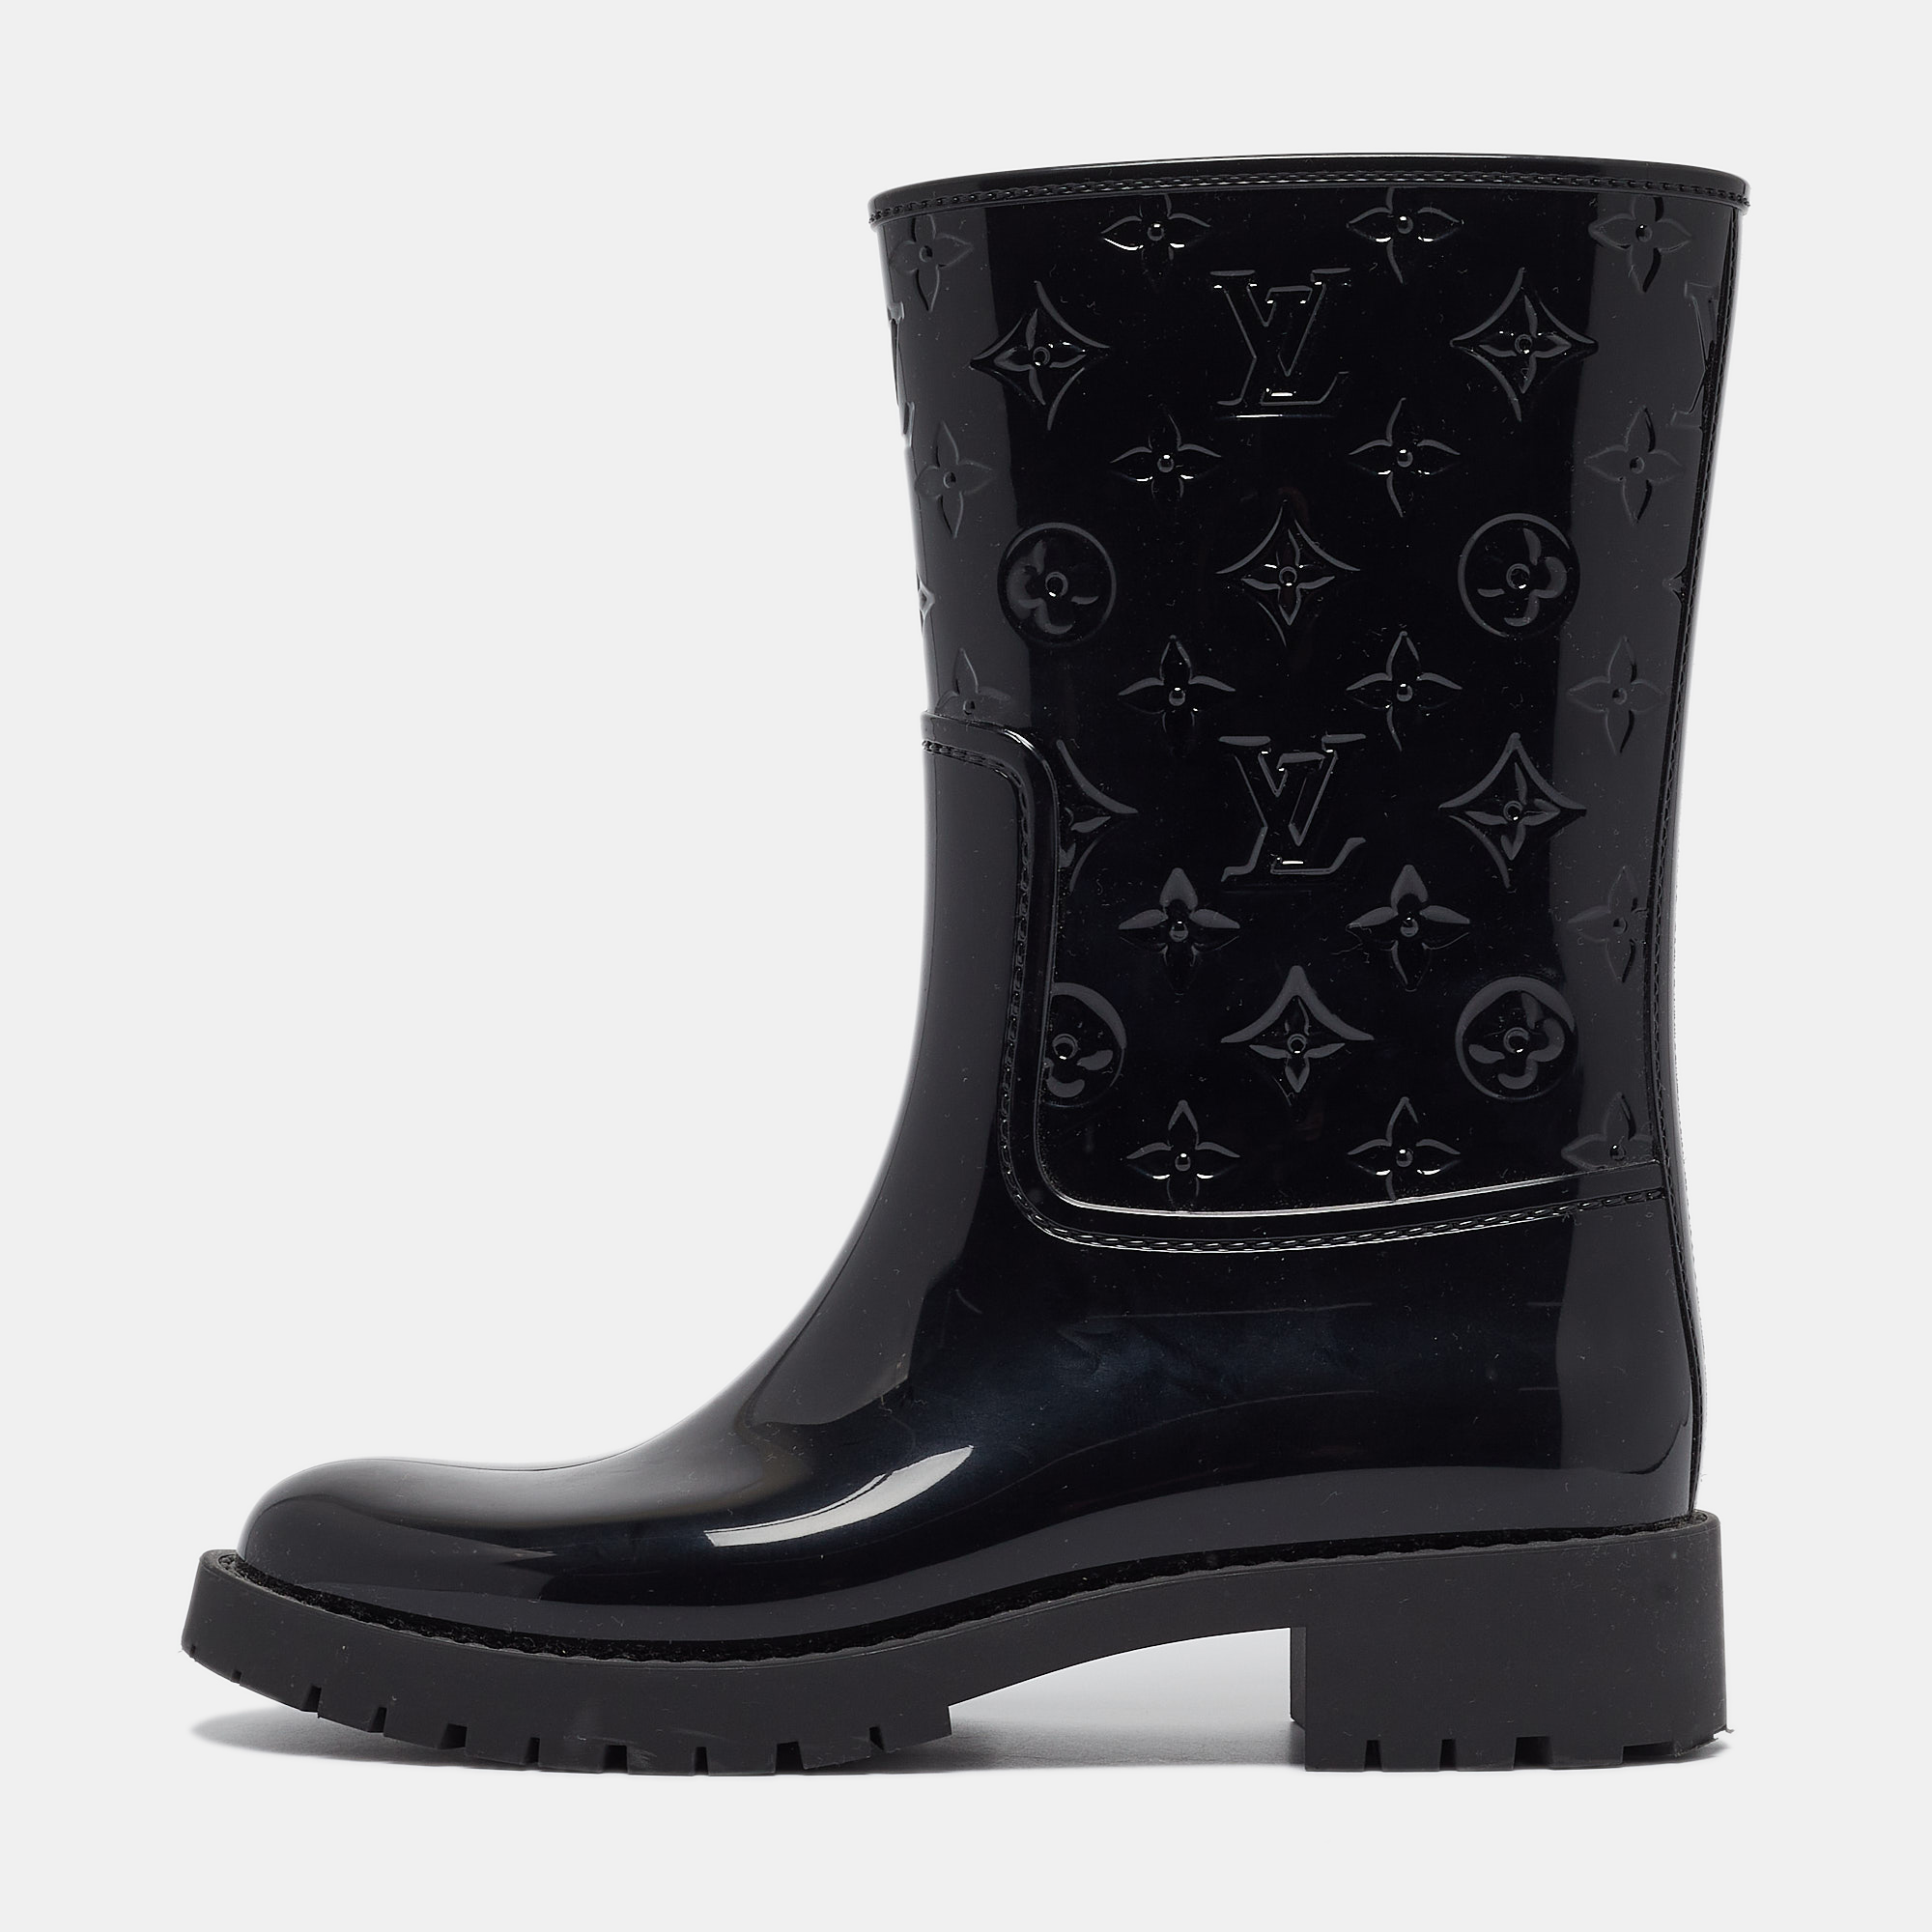 Louis vuitton black monogram rubber mid calf boots size 39